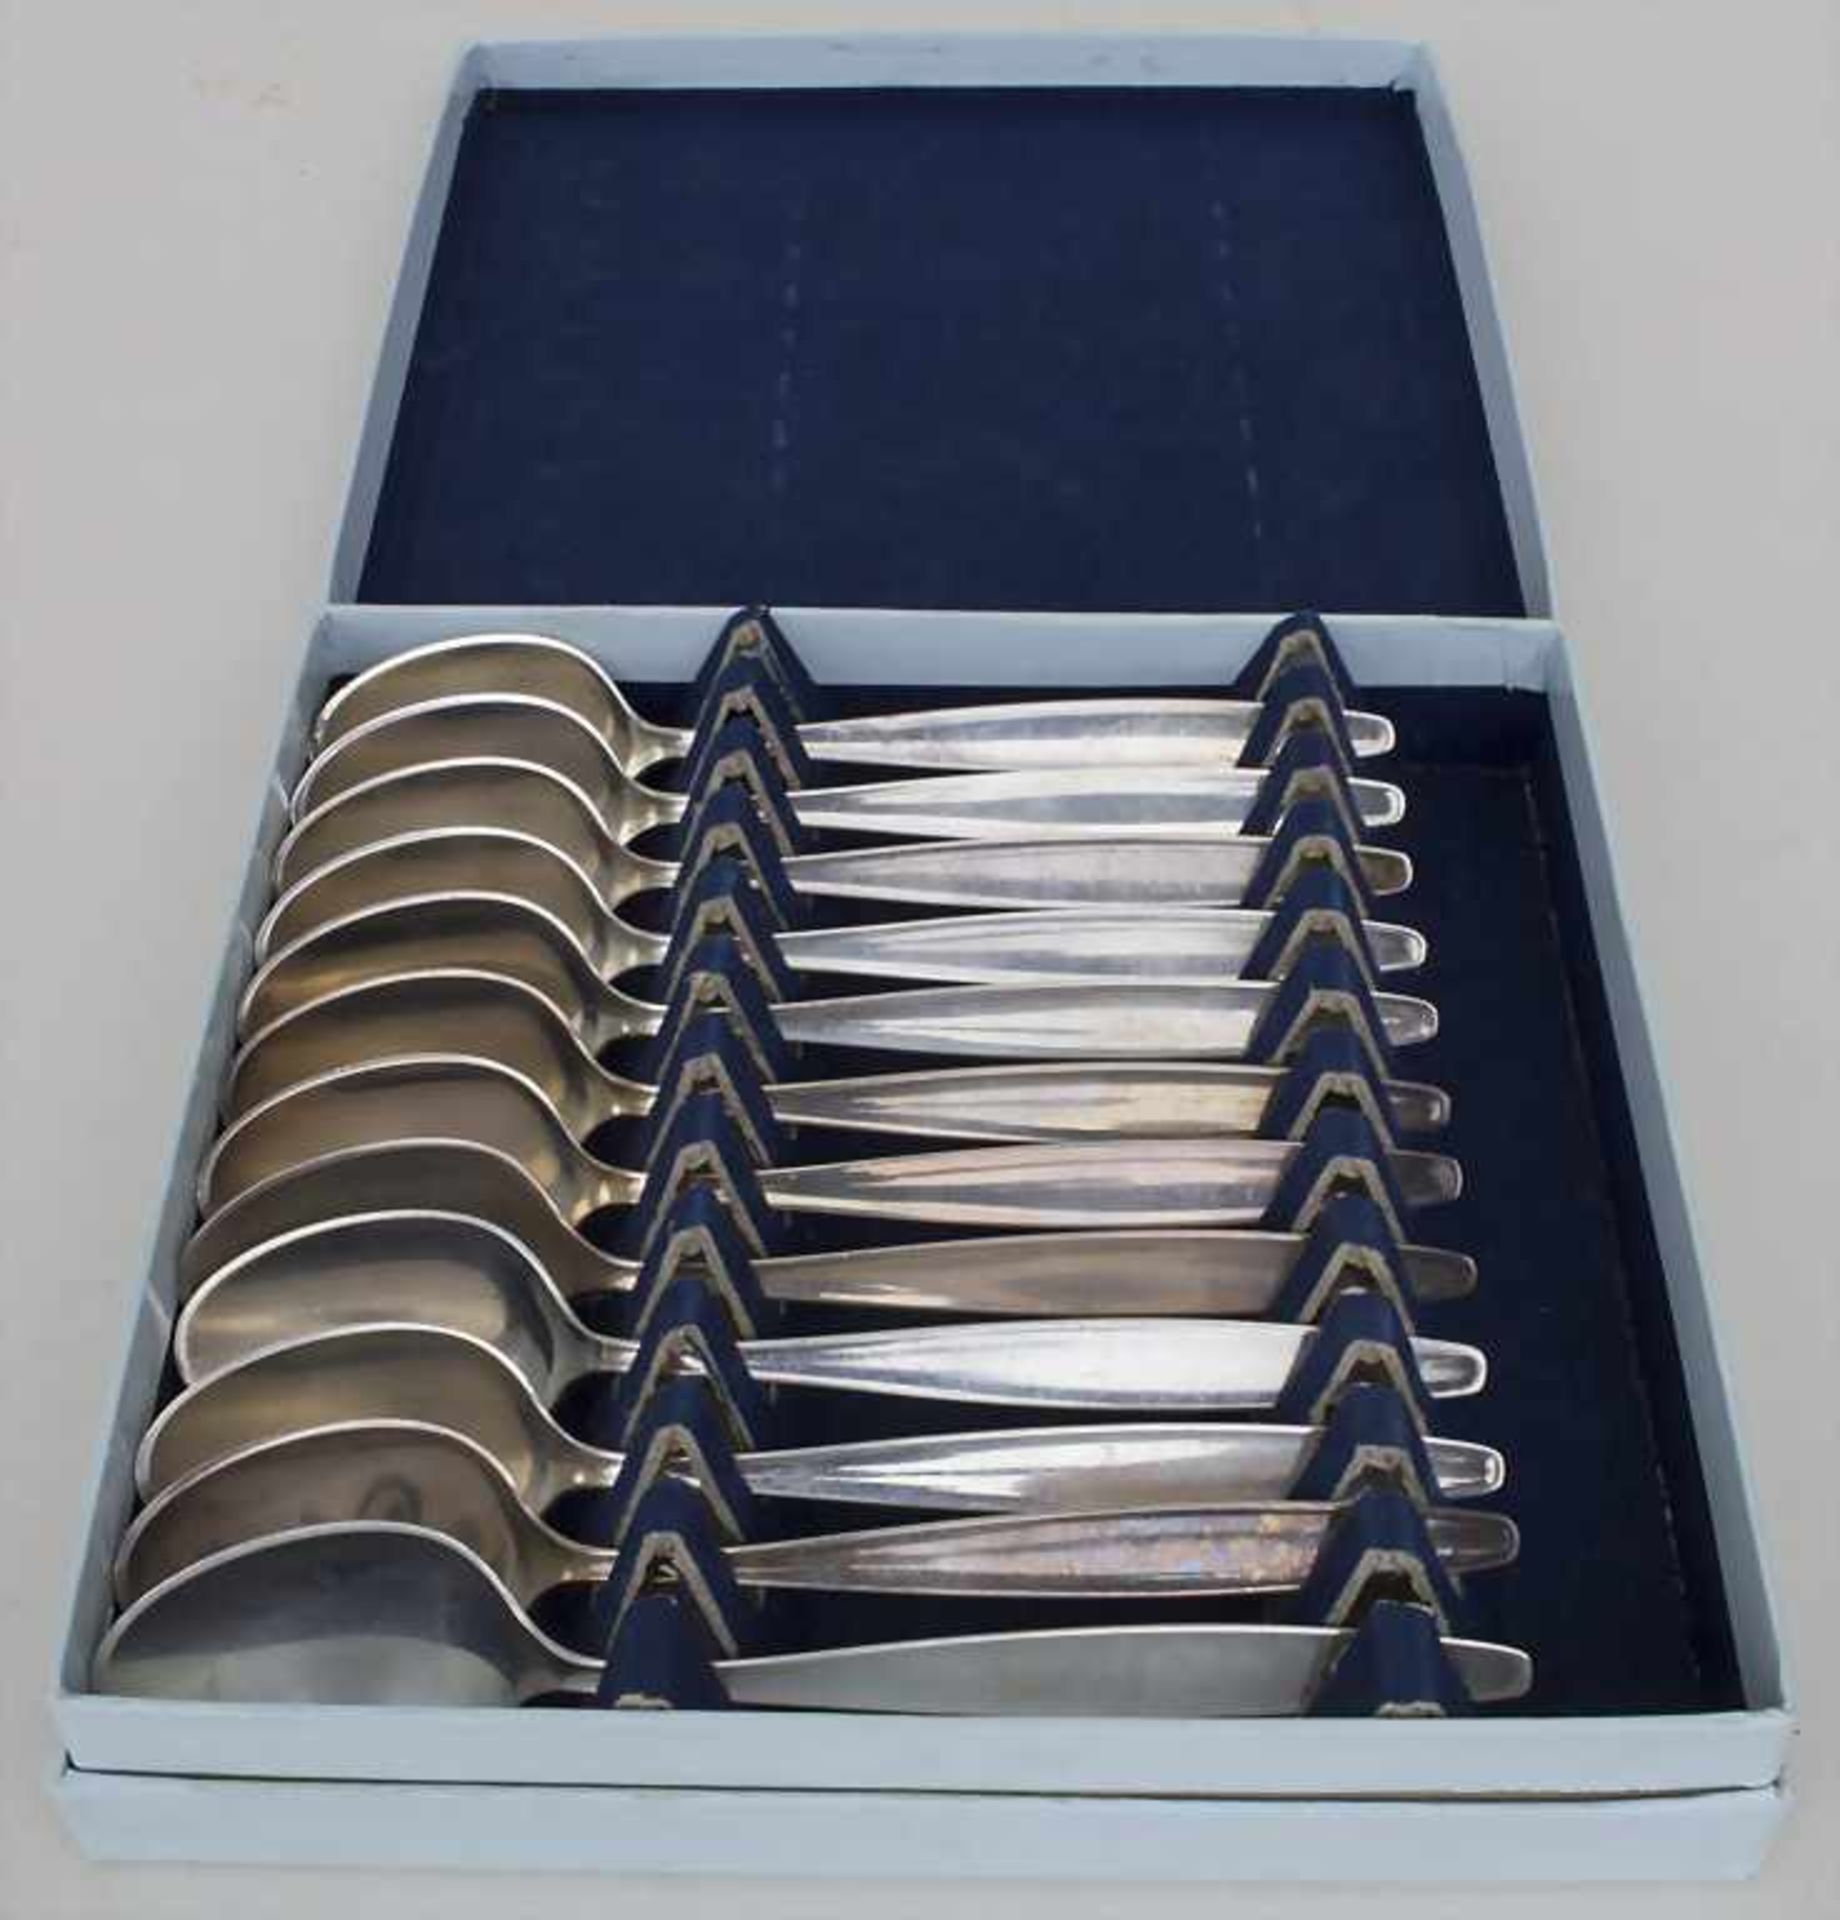 12 Kaffeelöffel 'Cypress' / 12 sterling silver spoons 'Cypres', Tias Eckhoff, Georg Jensen, - Image 3 of 5